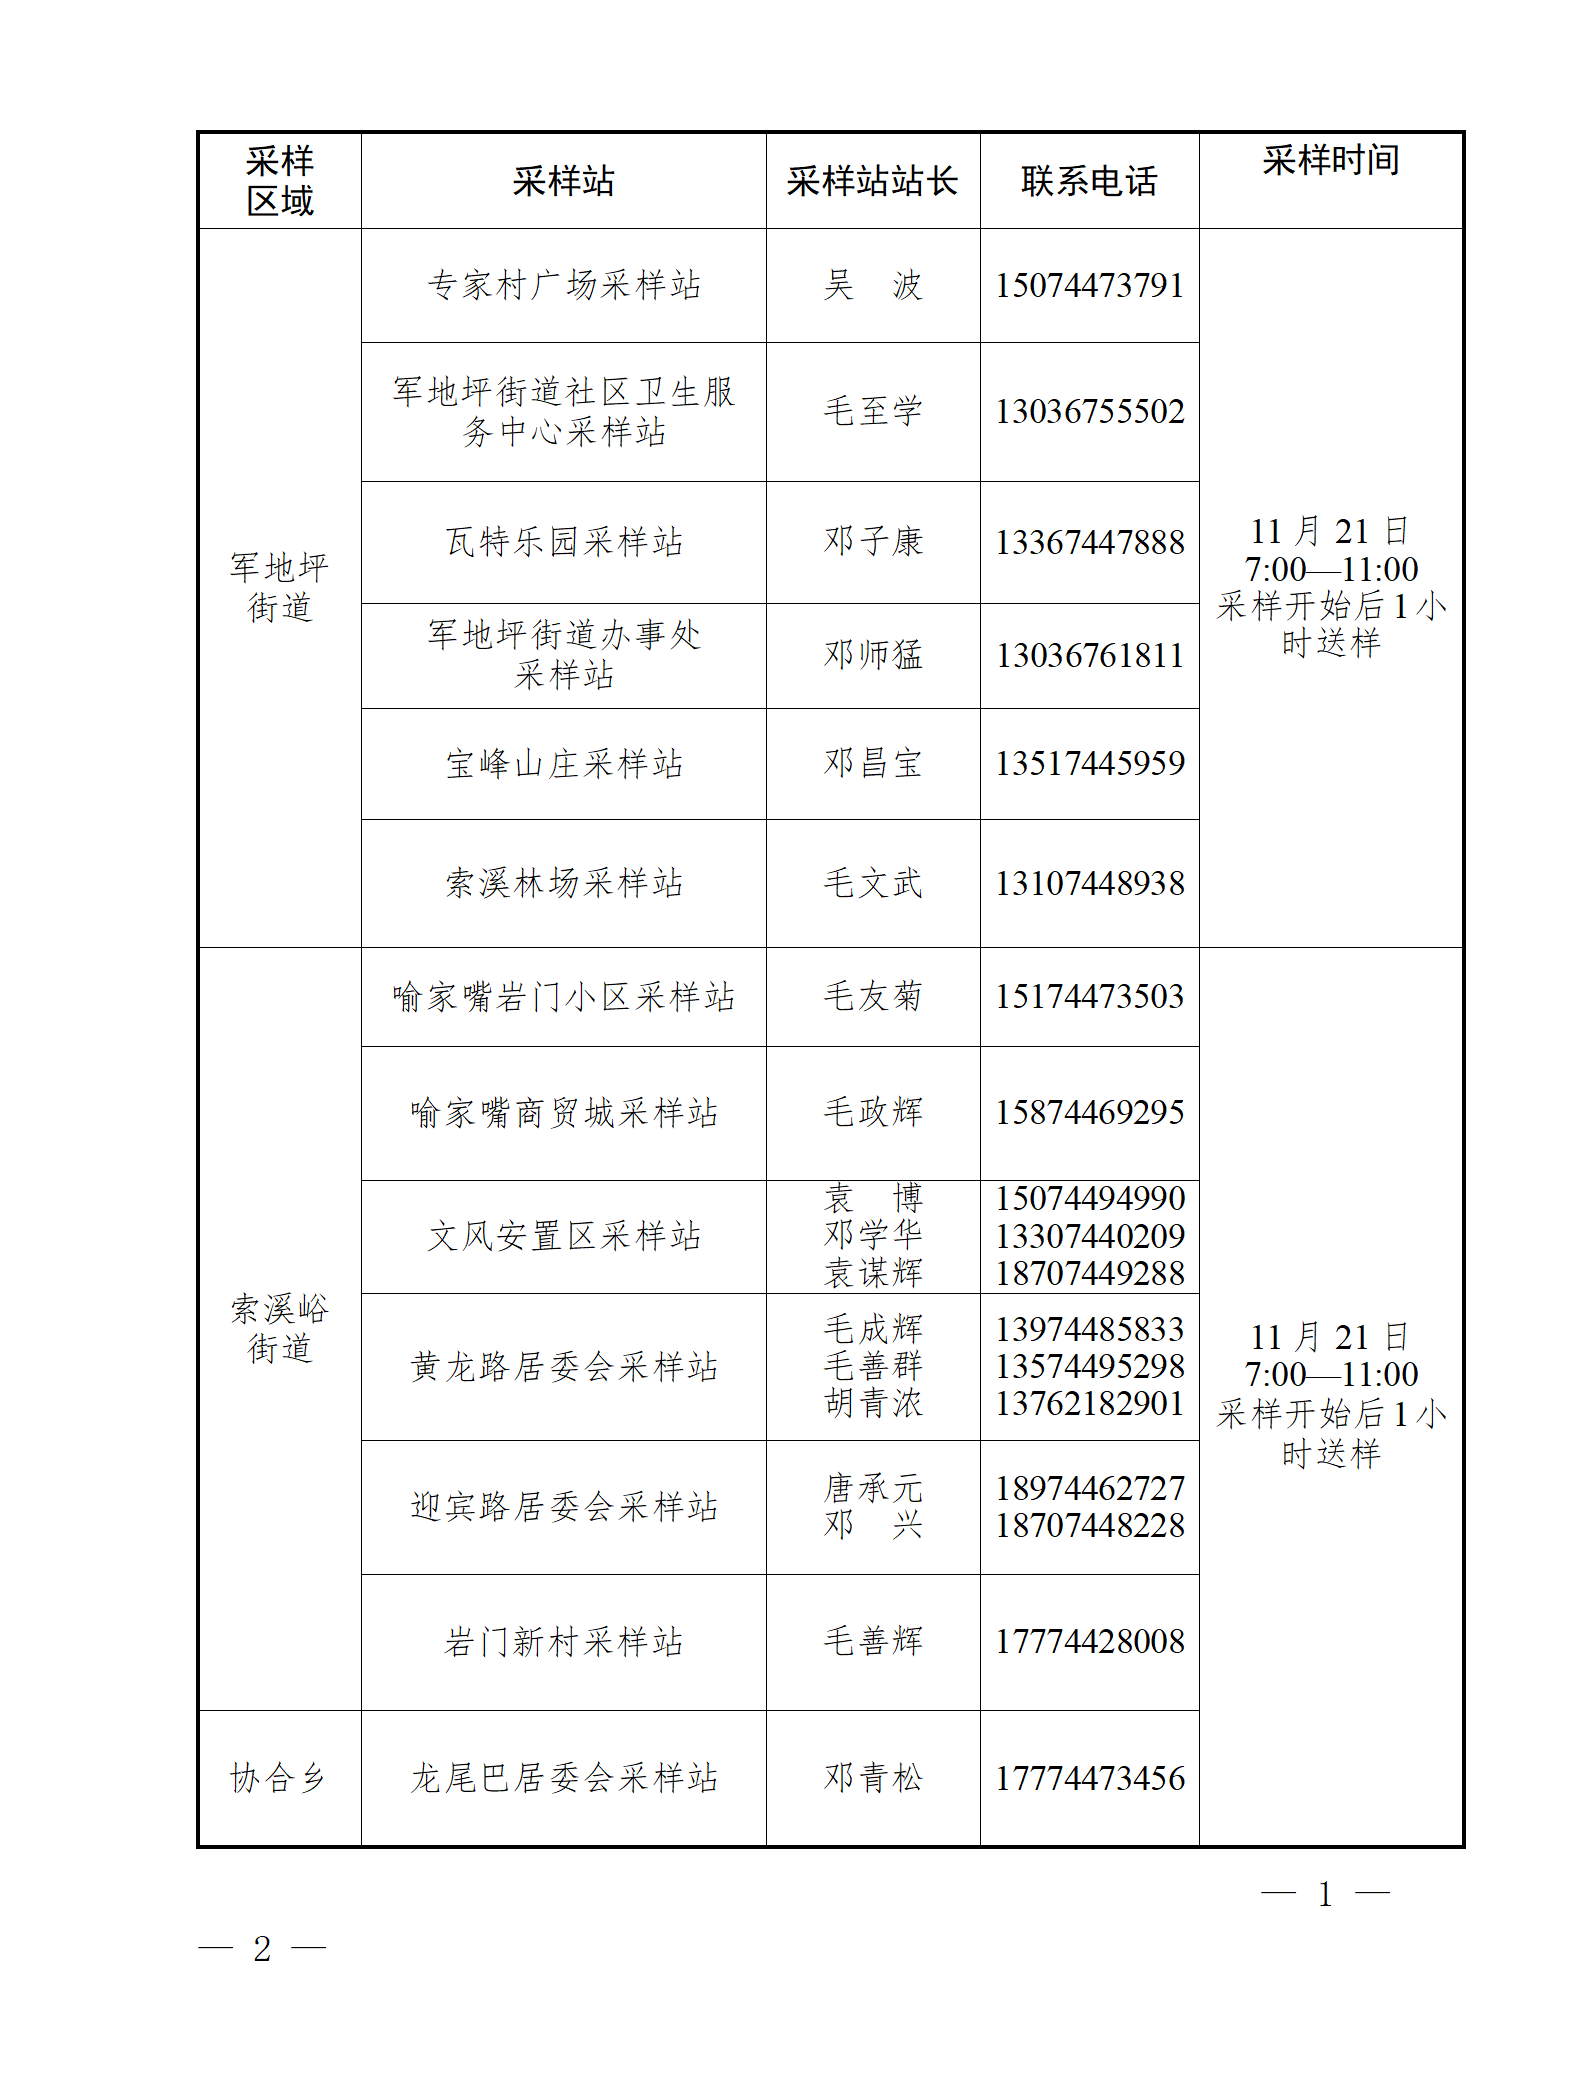 【11.21】第十六轮城区核酸检测公告_01.png